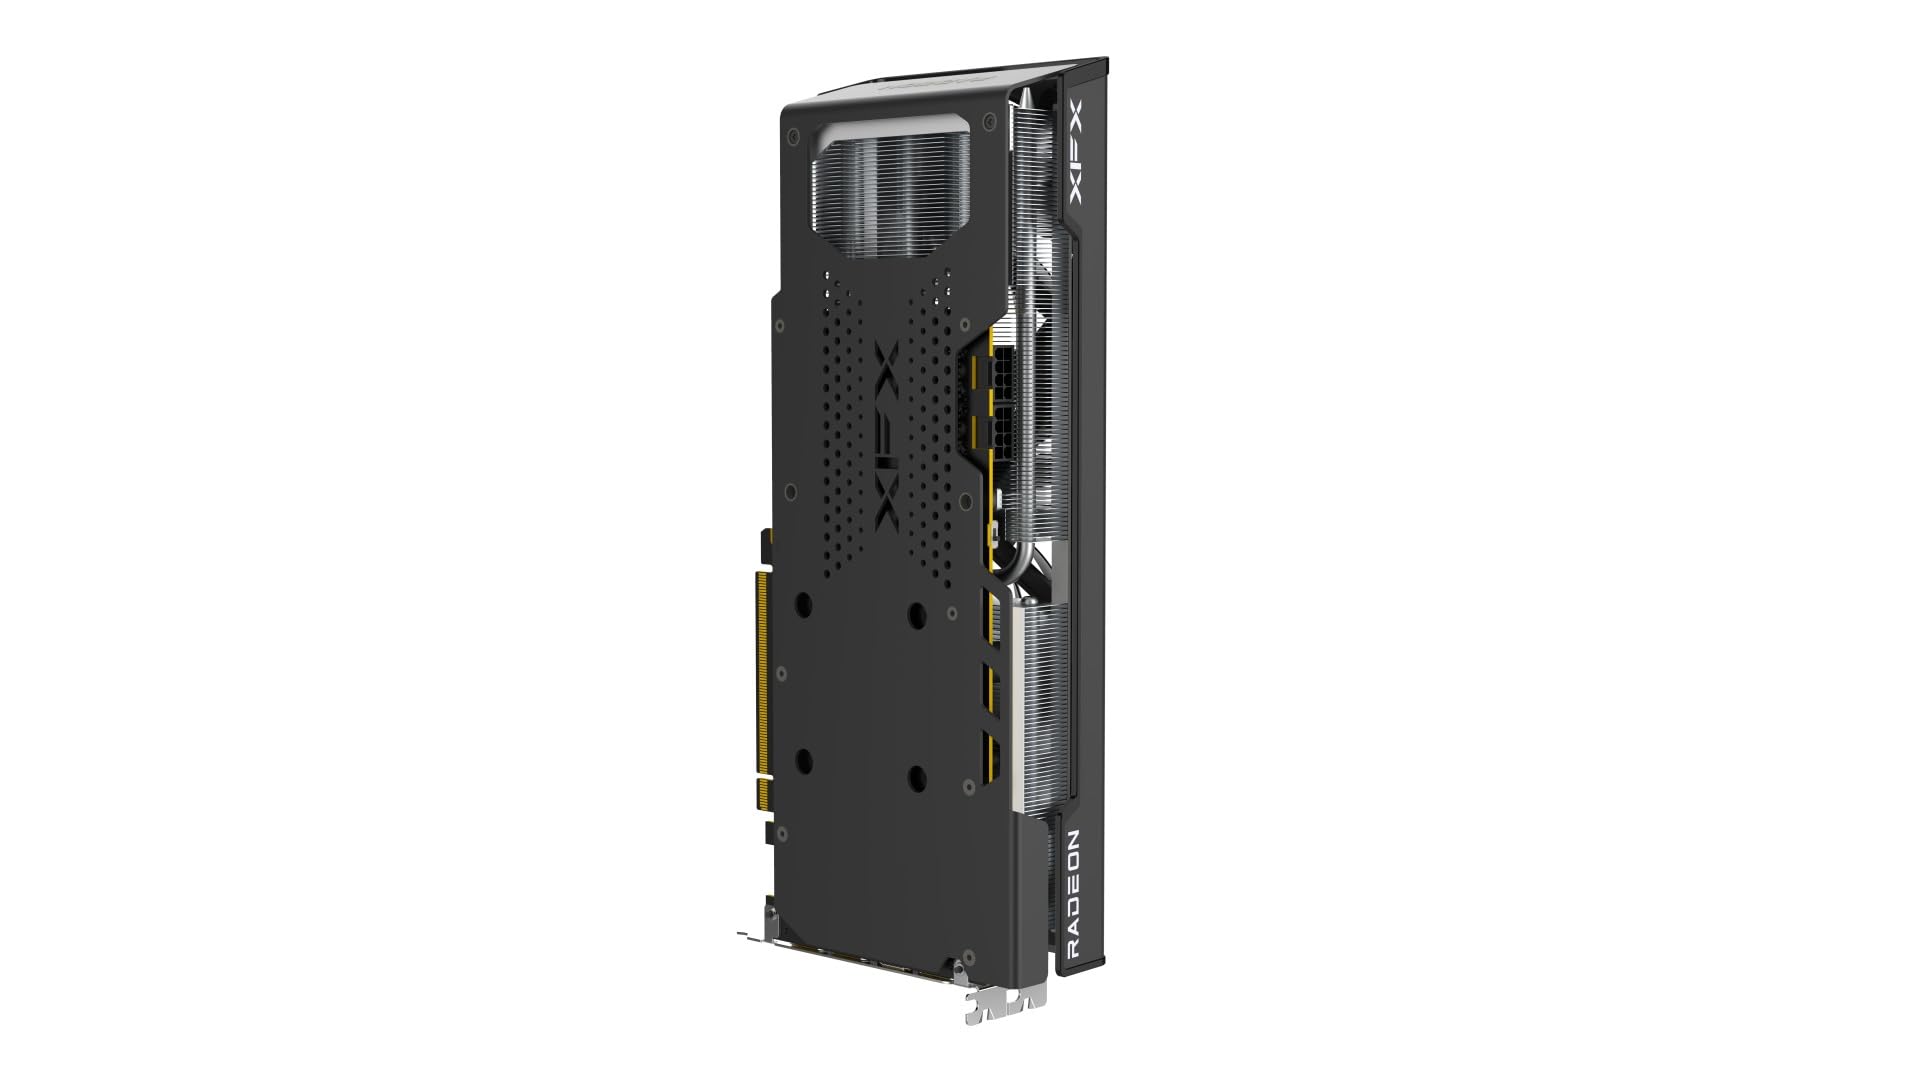 XFX Speedster QICK309 Radeon RX 7600XT Black Gaming Graphics Card with 16GB GDDR6 HDMI 3xDP, AMD RDNA 3 RX-76TQICKBP